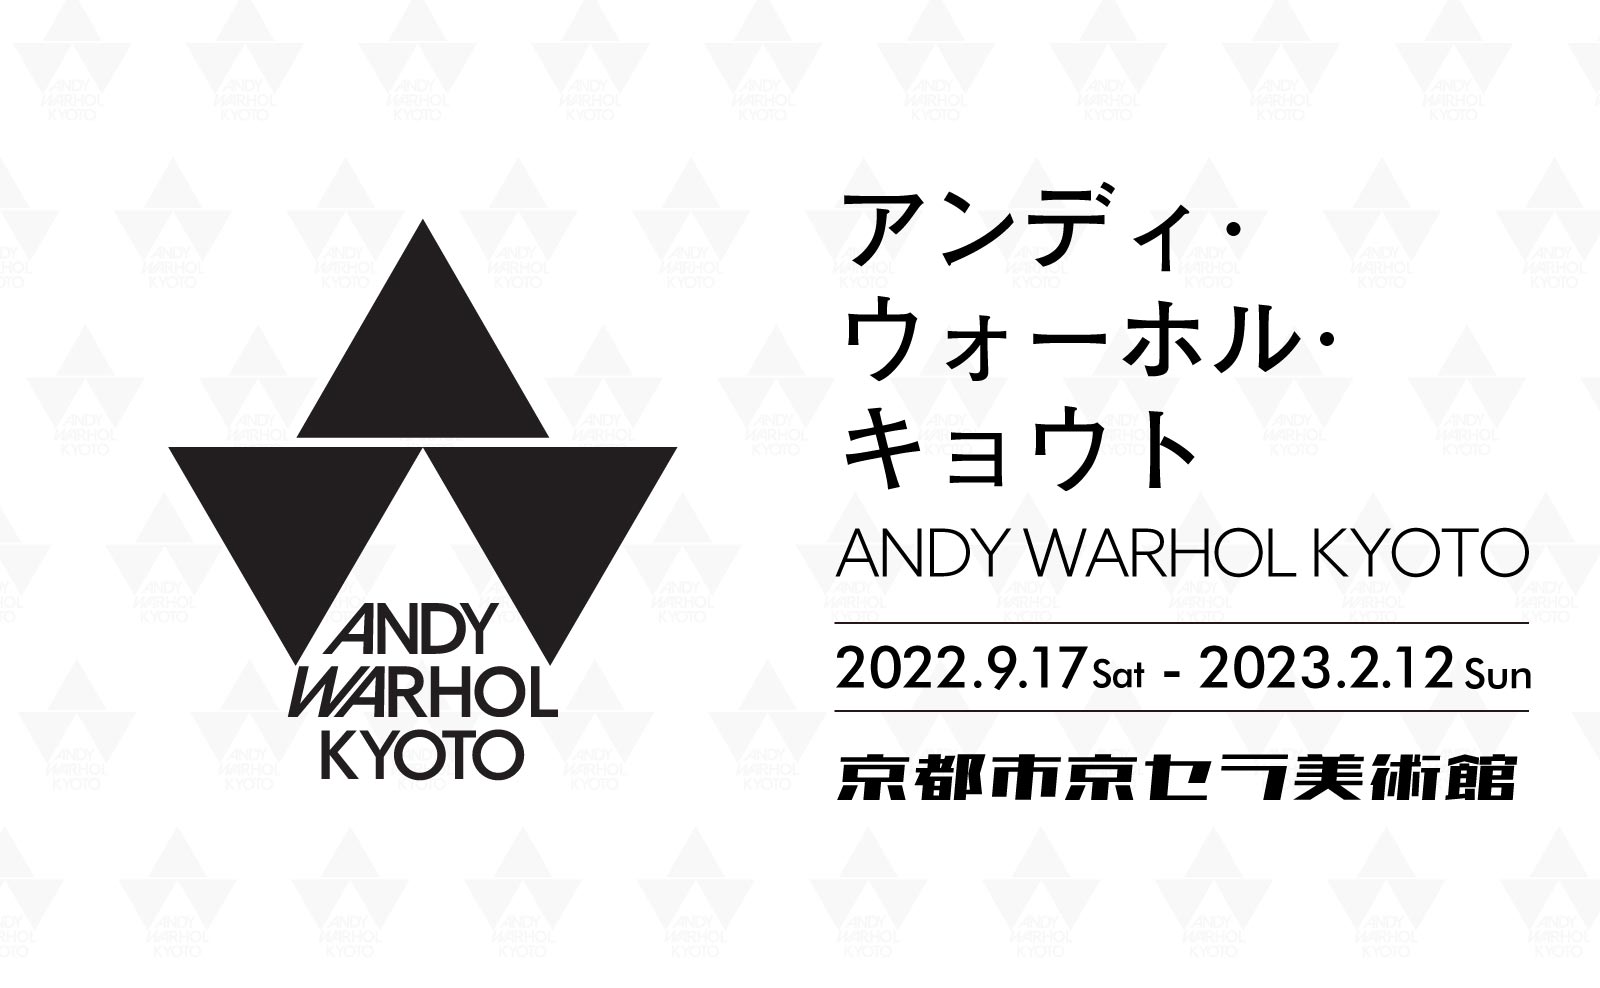 京都市京セラ美術館で開催の「ANDY WARHOL KYOTO」のアイキャッチ画像